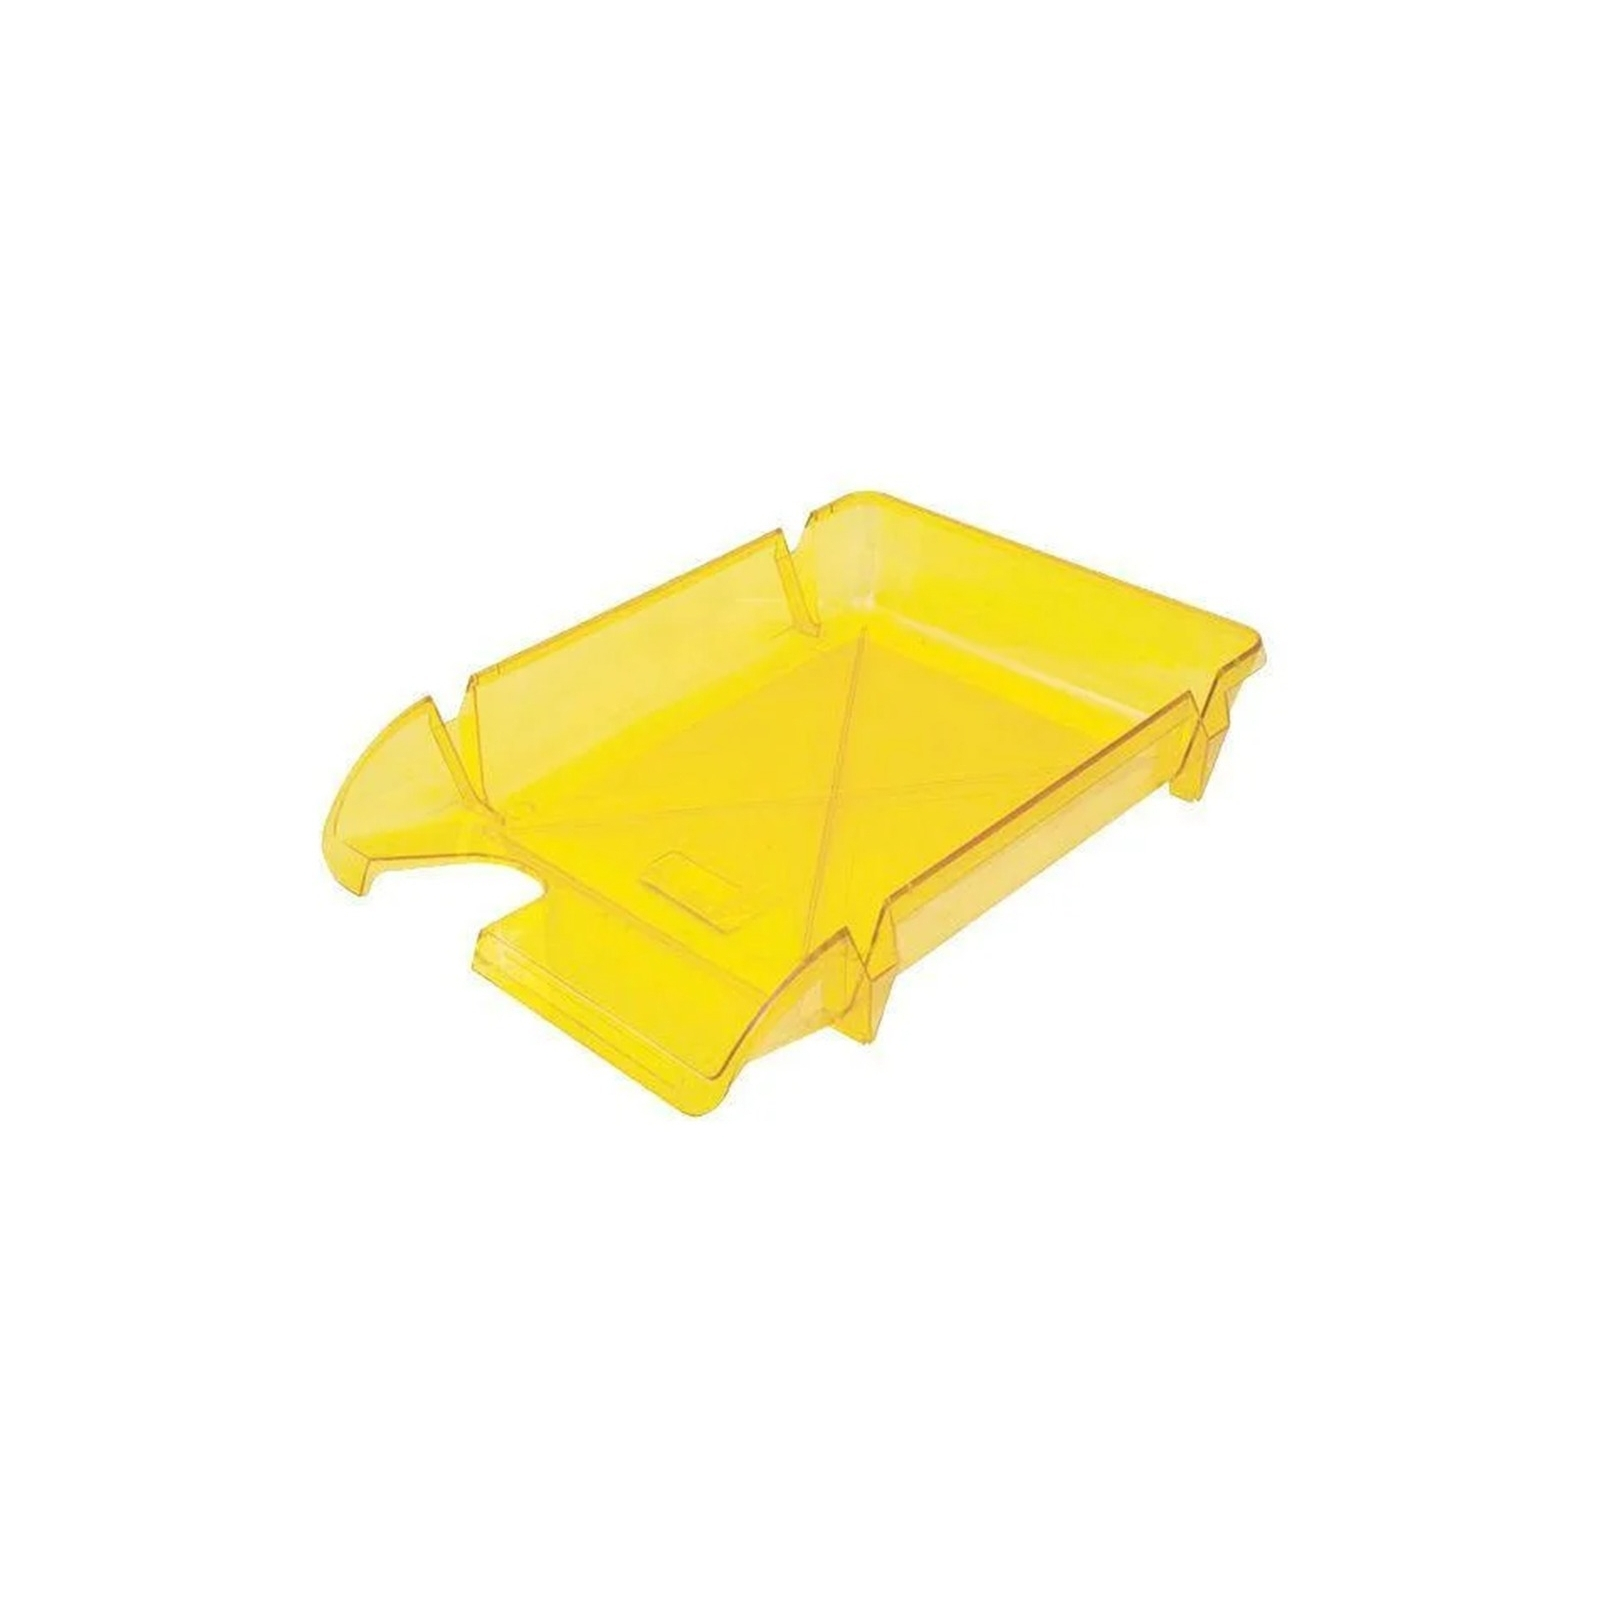 Лоток для бумаг Economix горизонтальный Компакт пластик, лимонный (E80606)